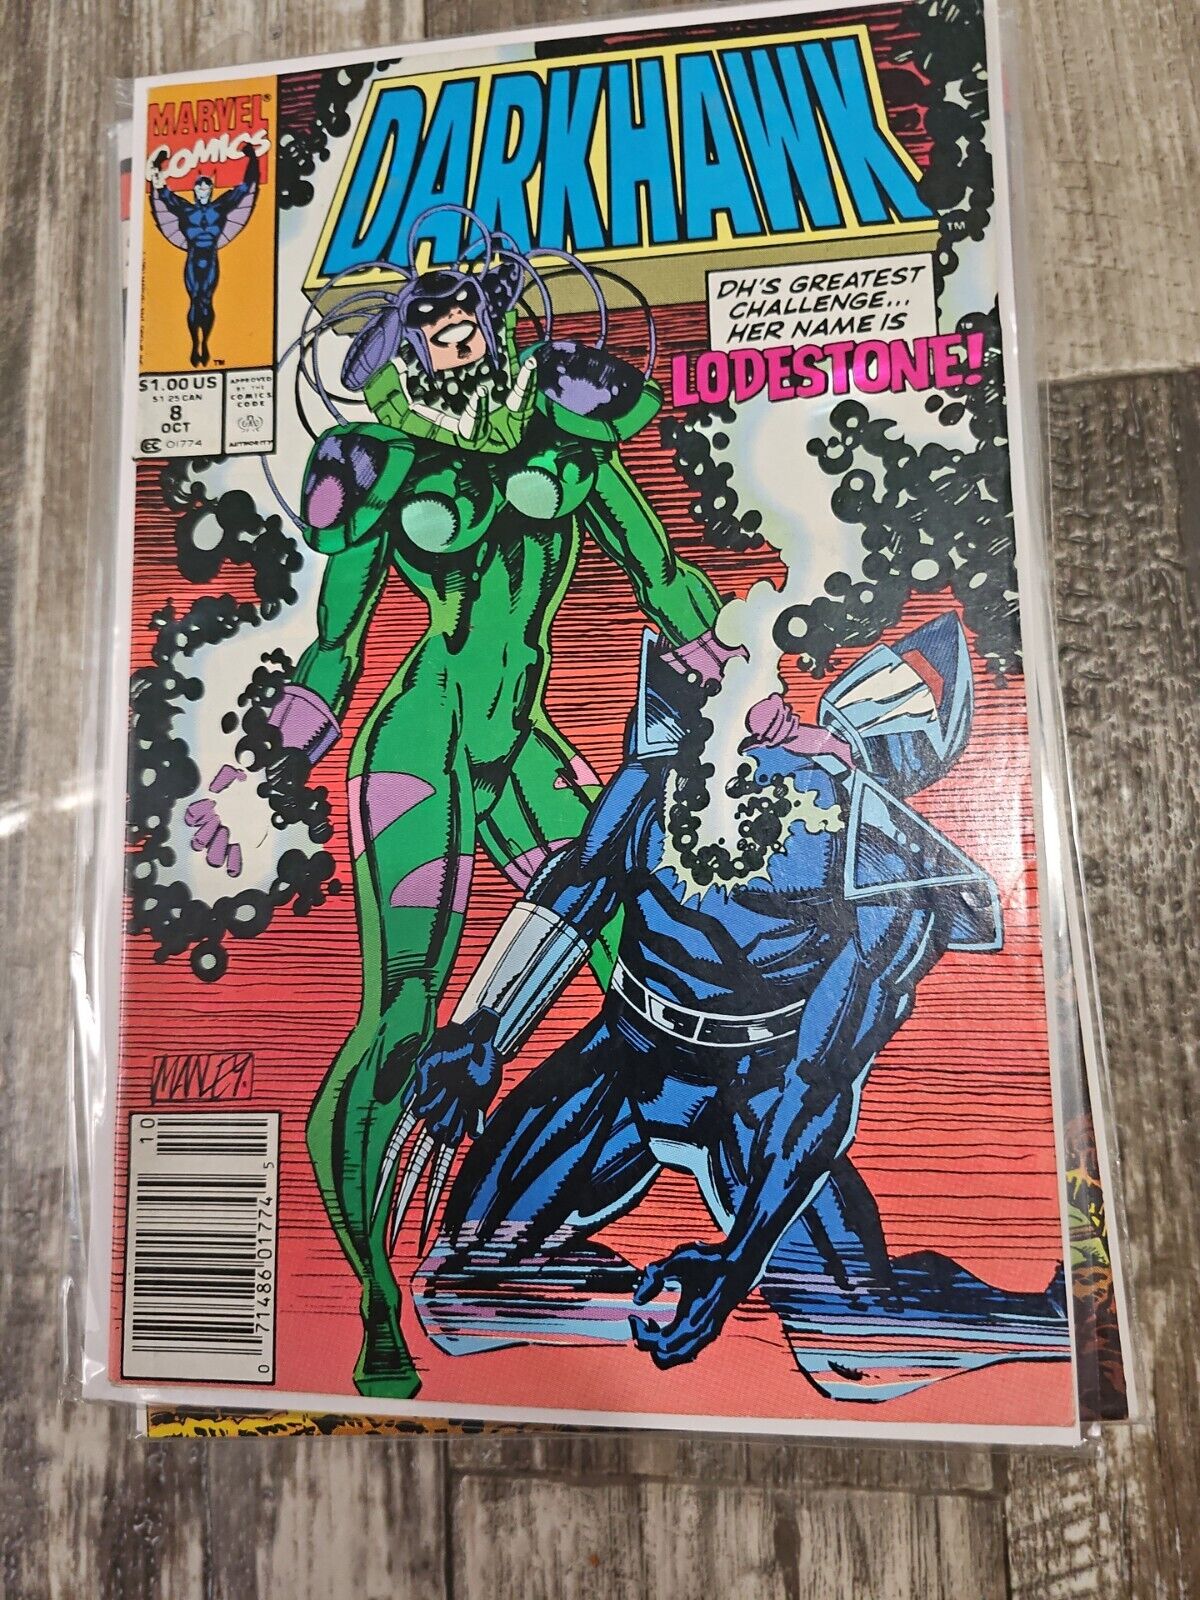 Darkhawk #8 (Oct 1991, Marvel) 